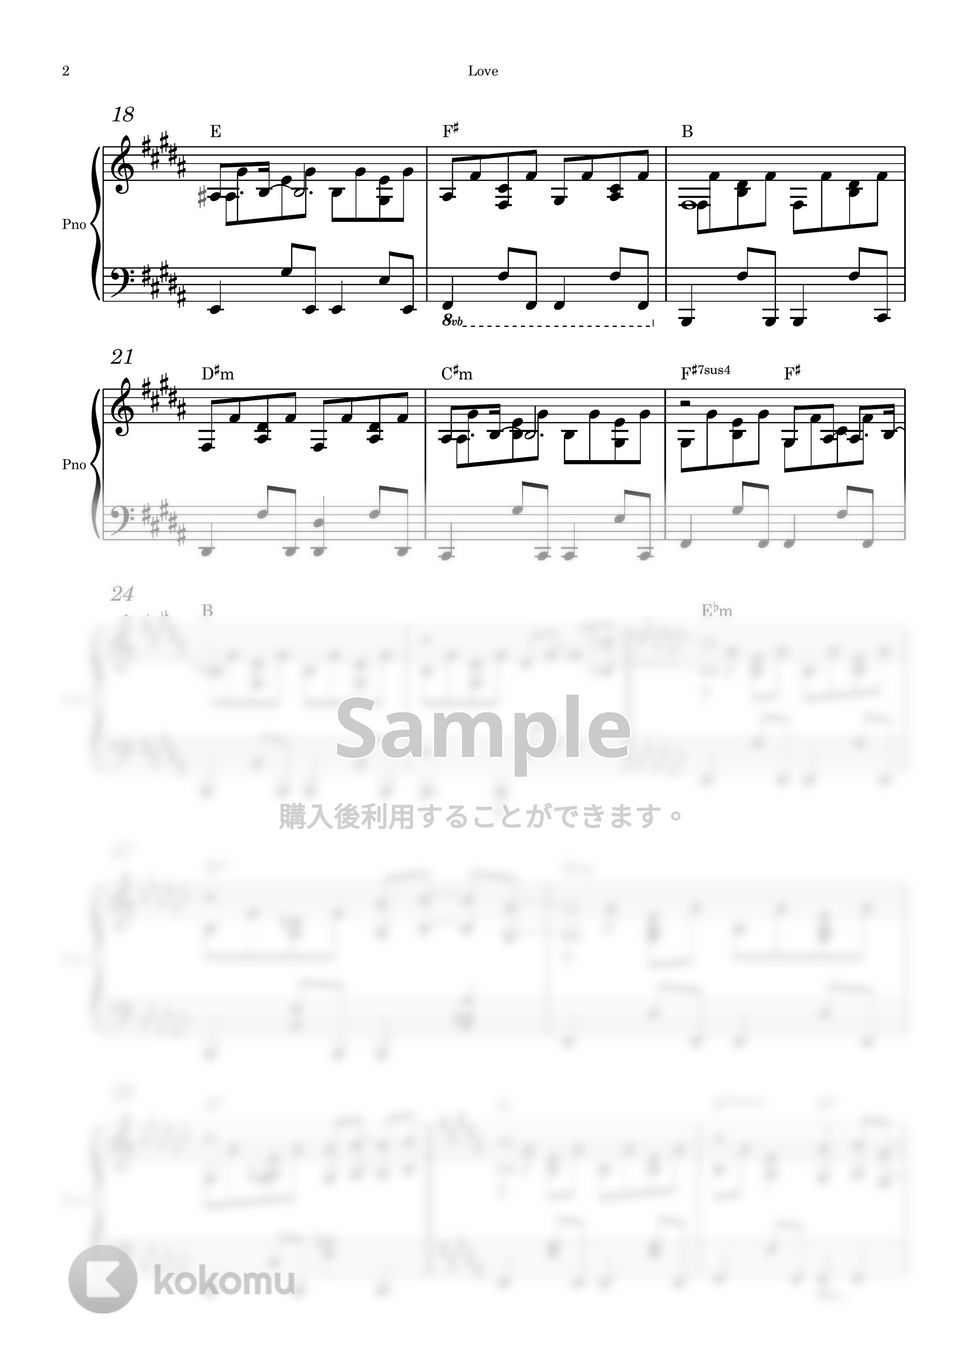 John Lennon - Love (ピアノソロ) by Piano QQQ